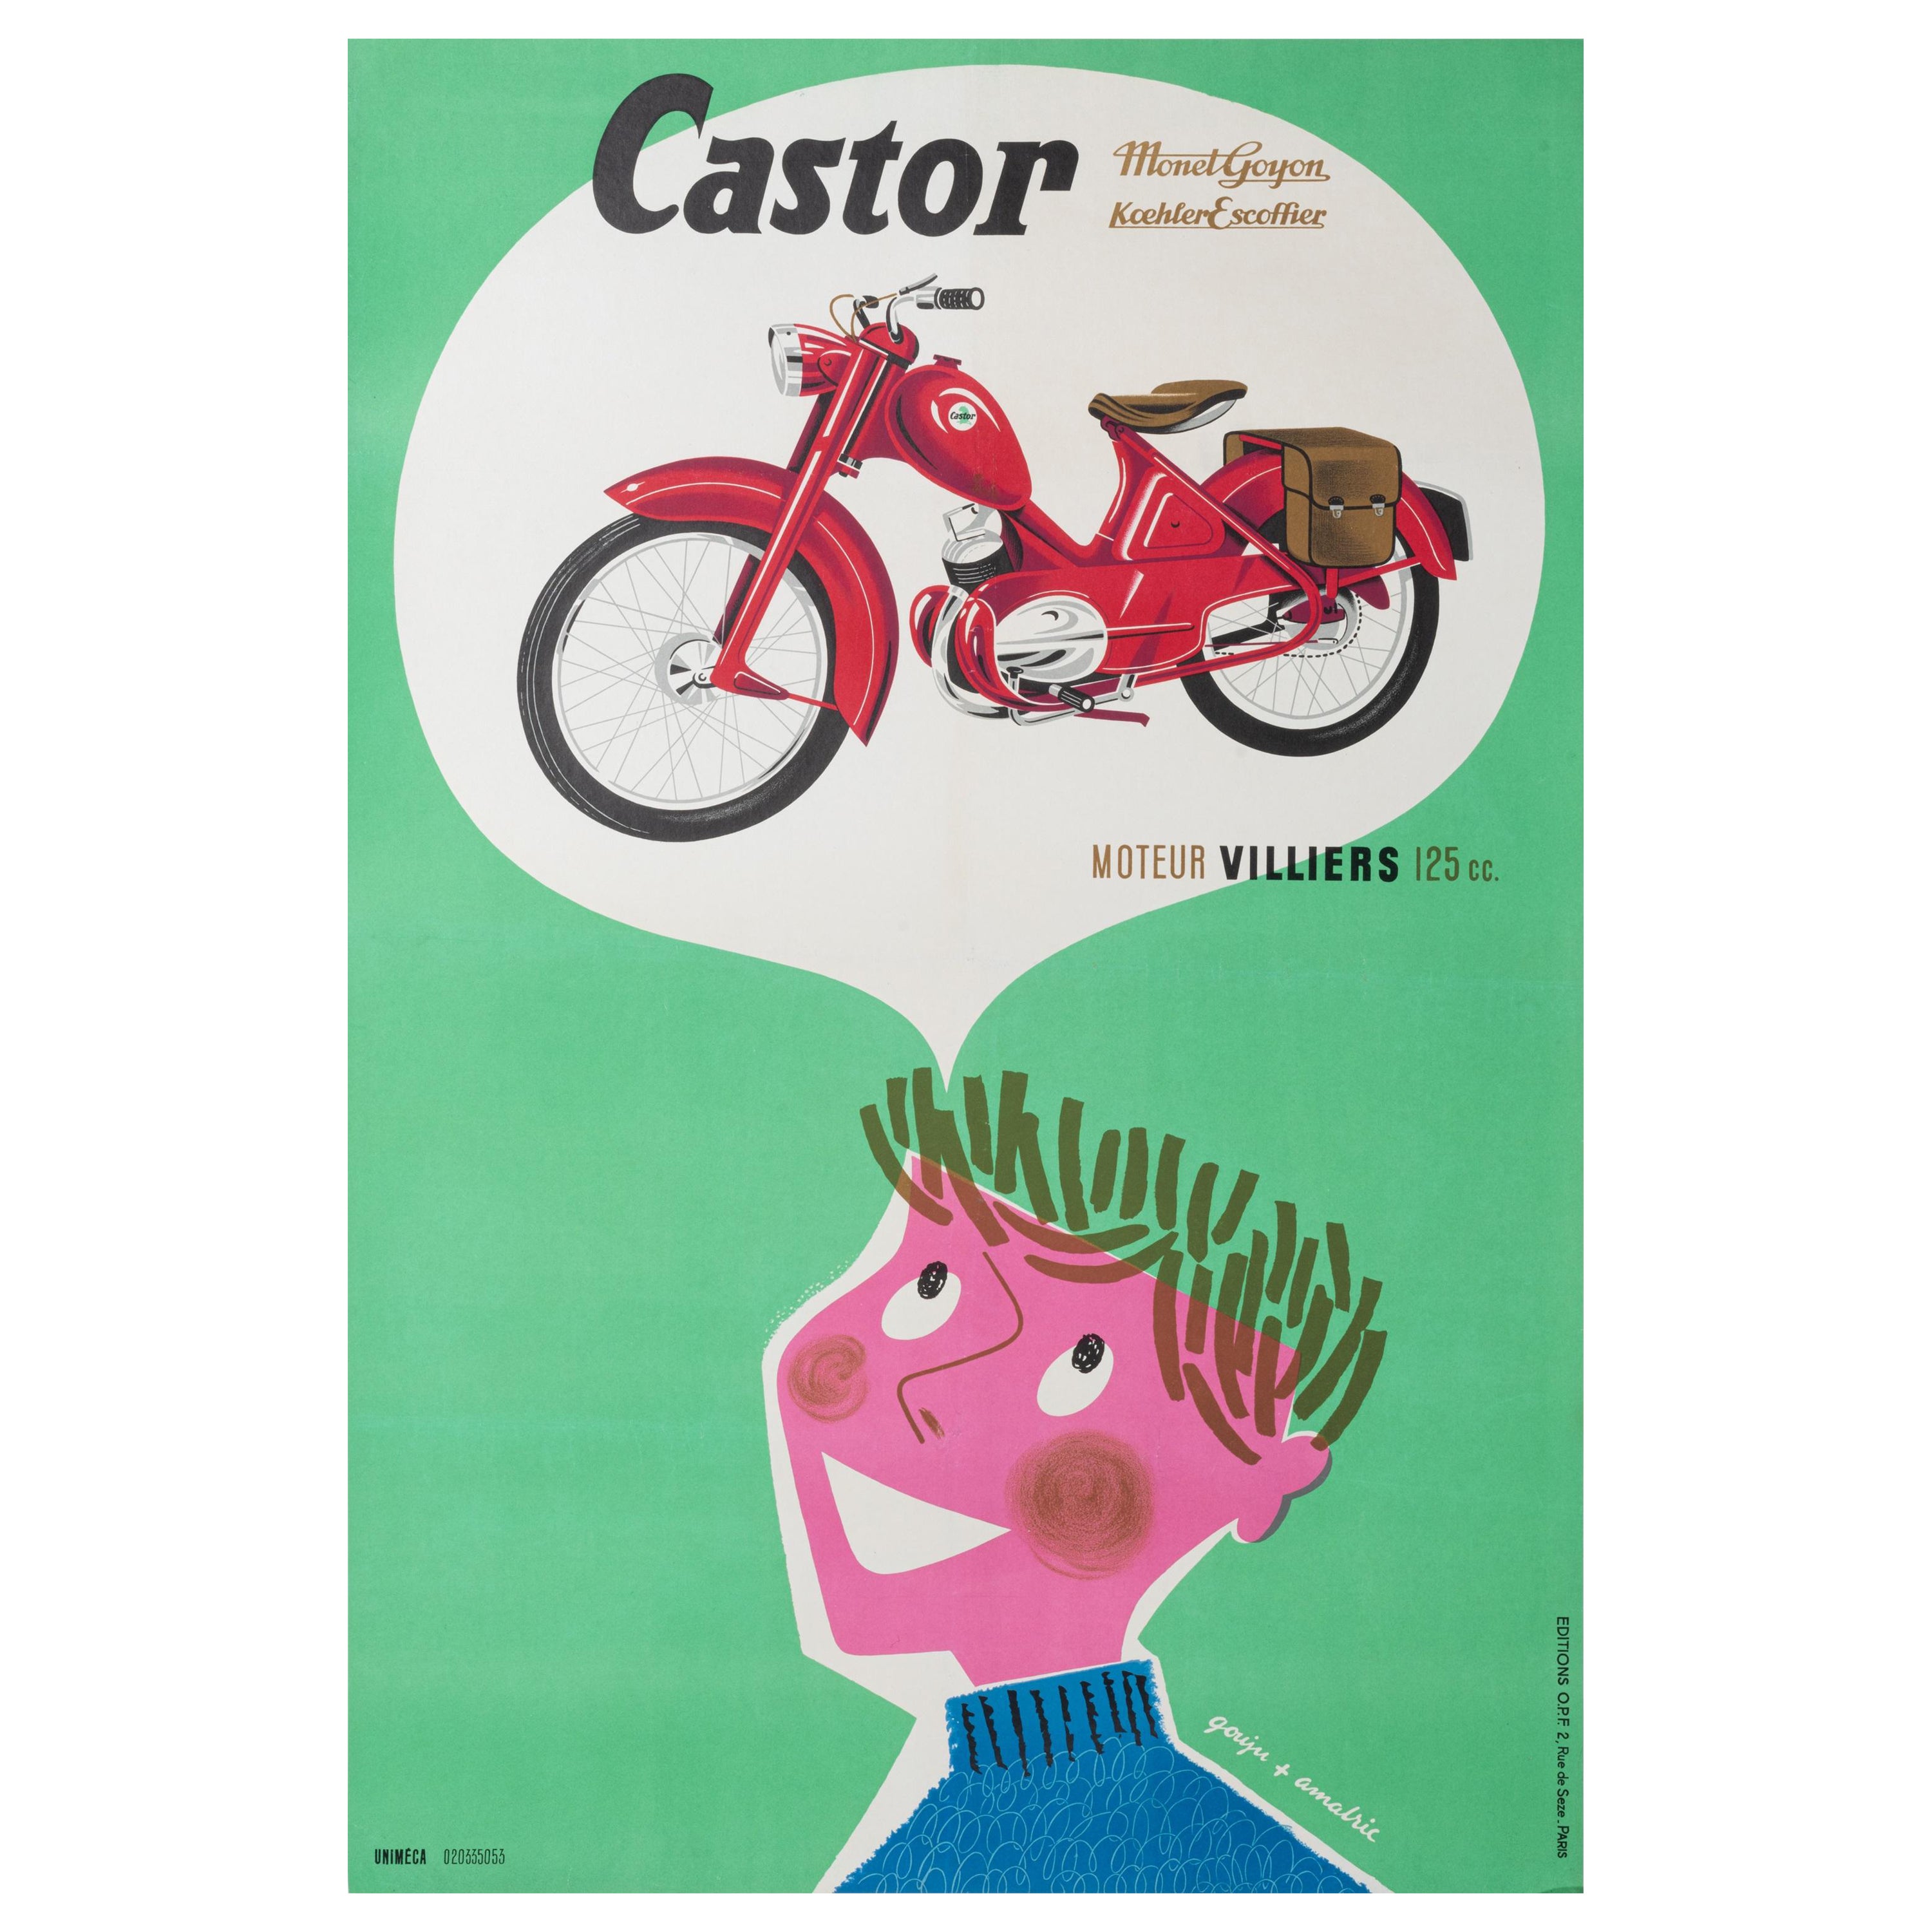 Gouju Amalric, Original Motocycle Poster, Castor, Monet Goyon Koehler, 1956 For Sale